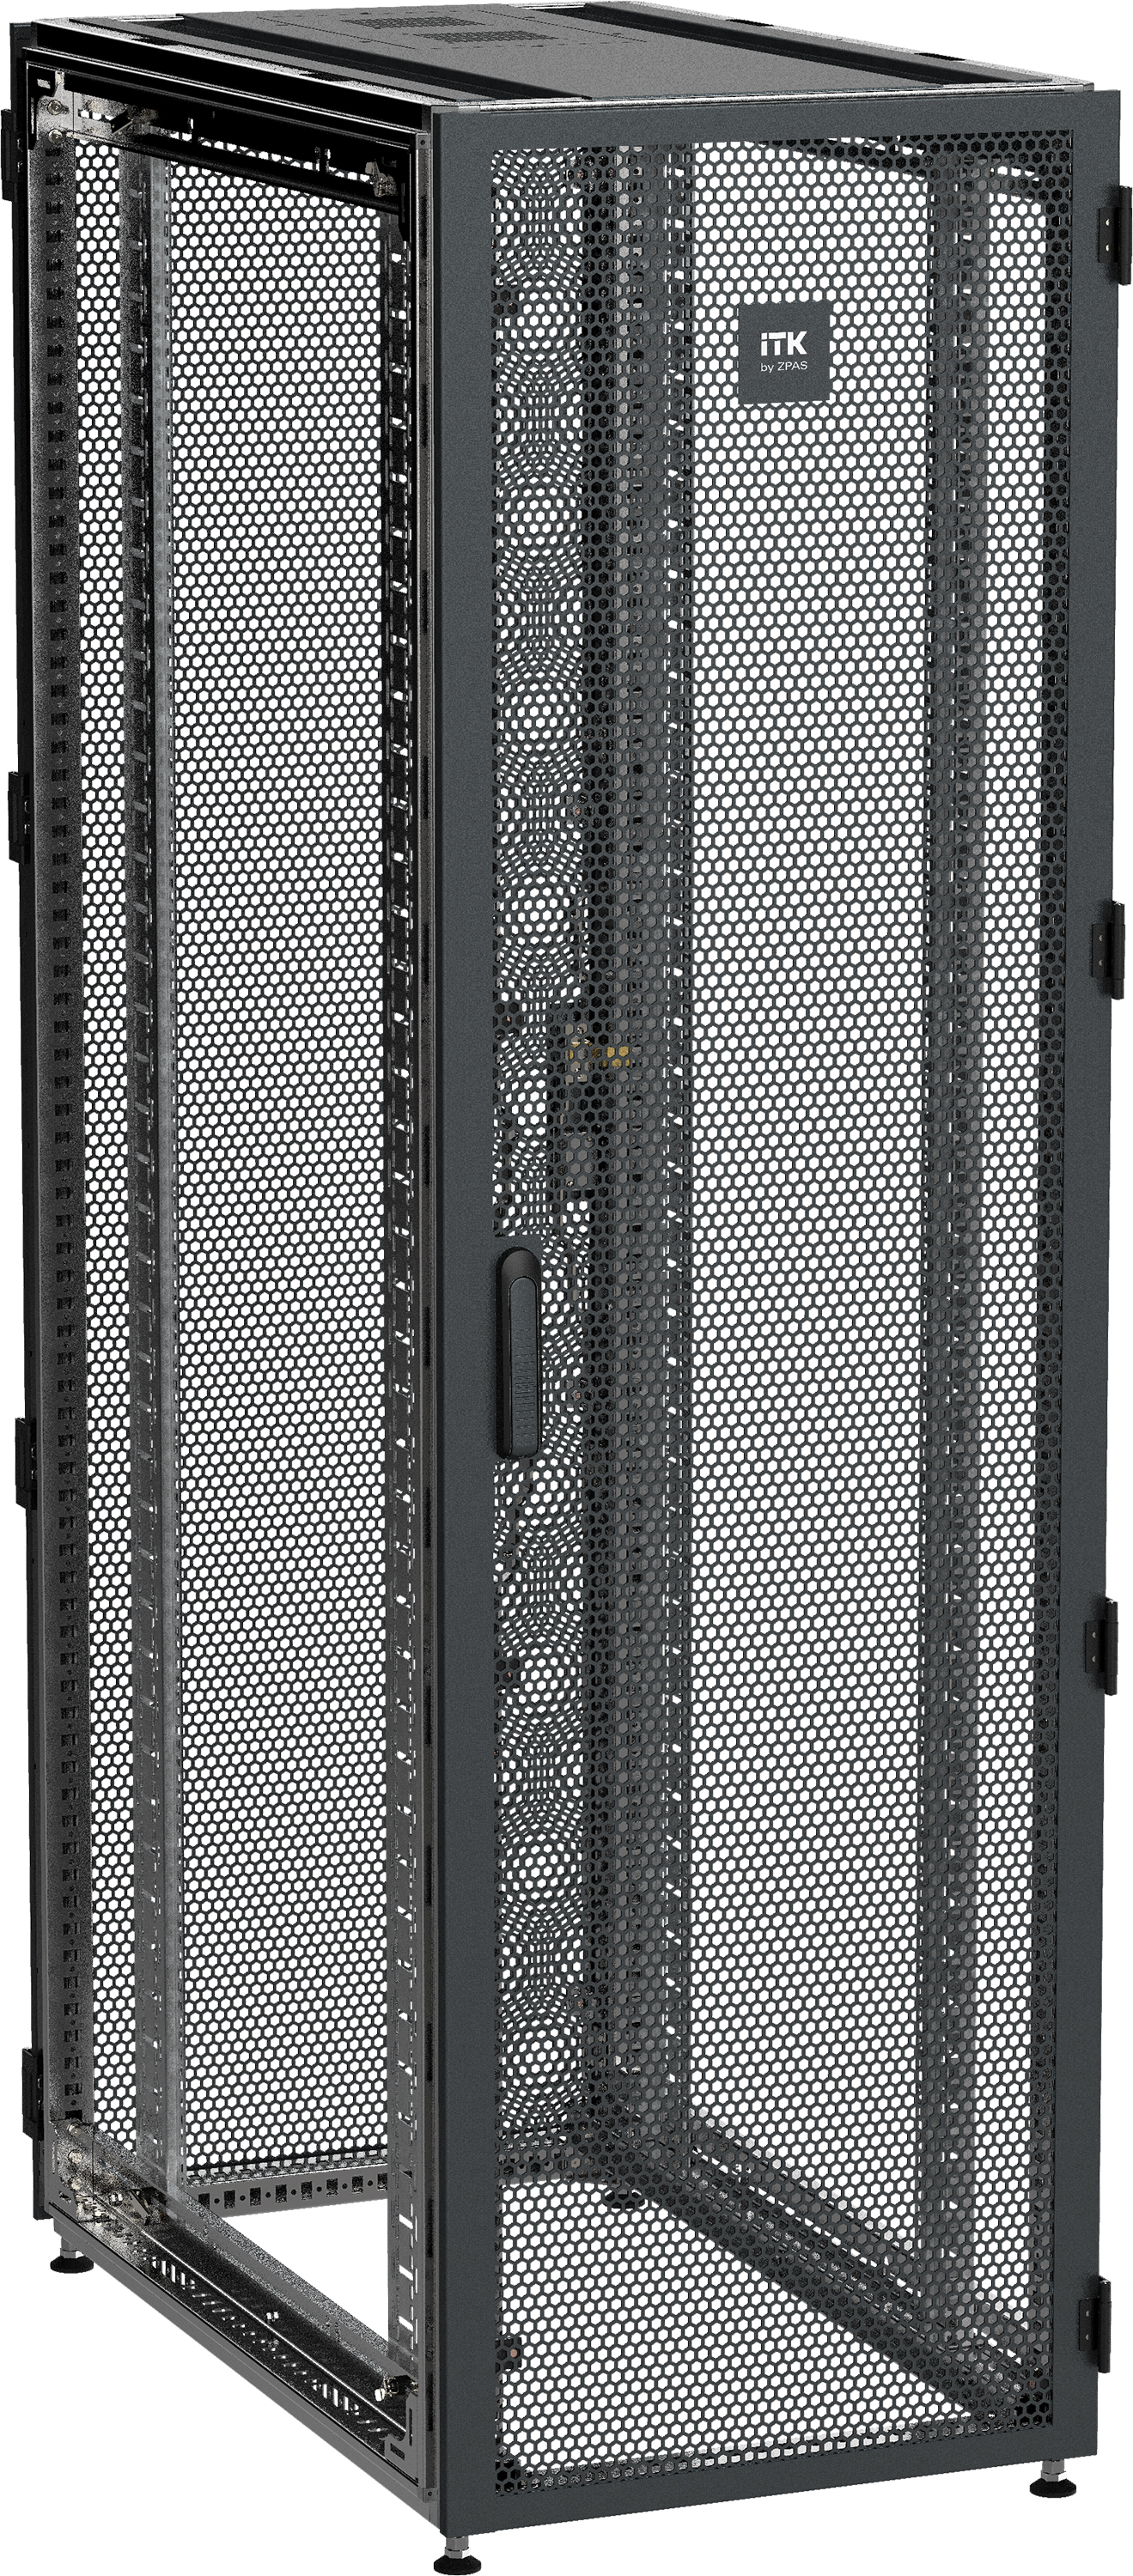 ITK by ZPAS Шкаф серверный 19" 47U 600х1000мм одностворчатые перфорированные двери черный РФ